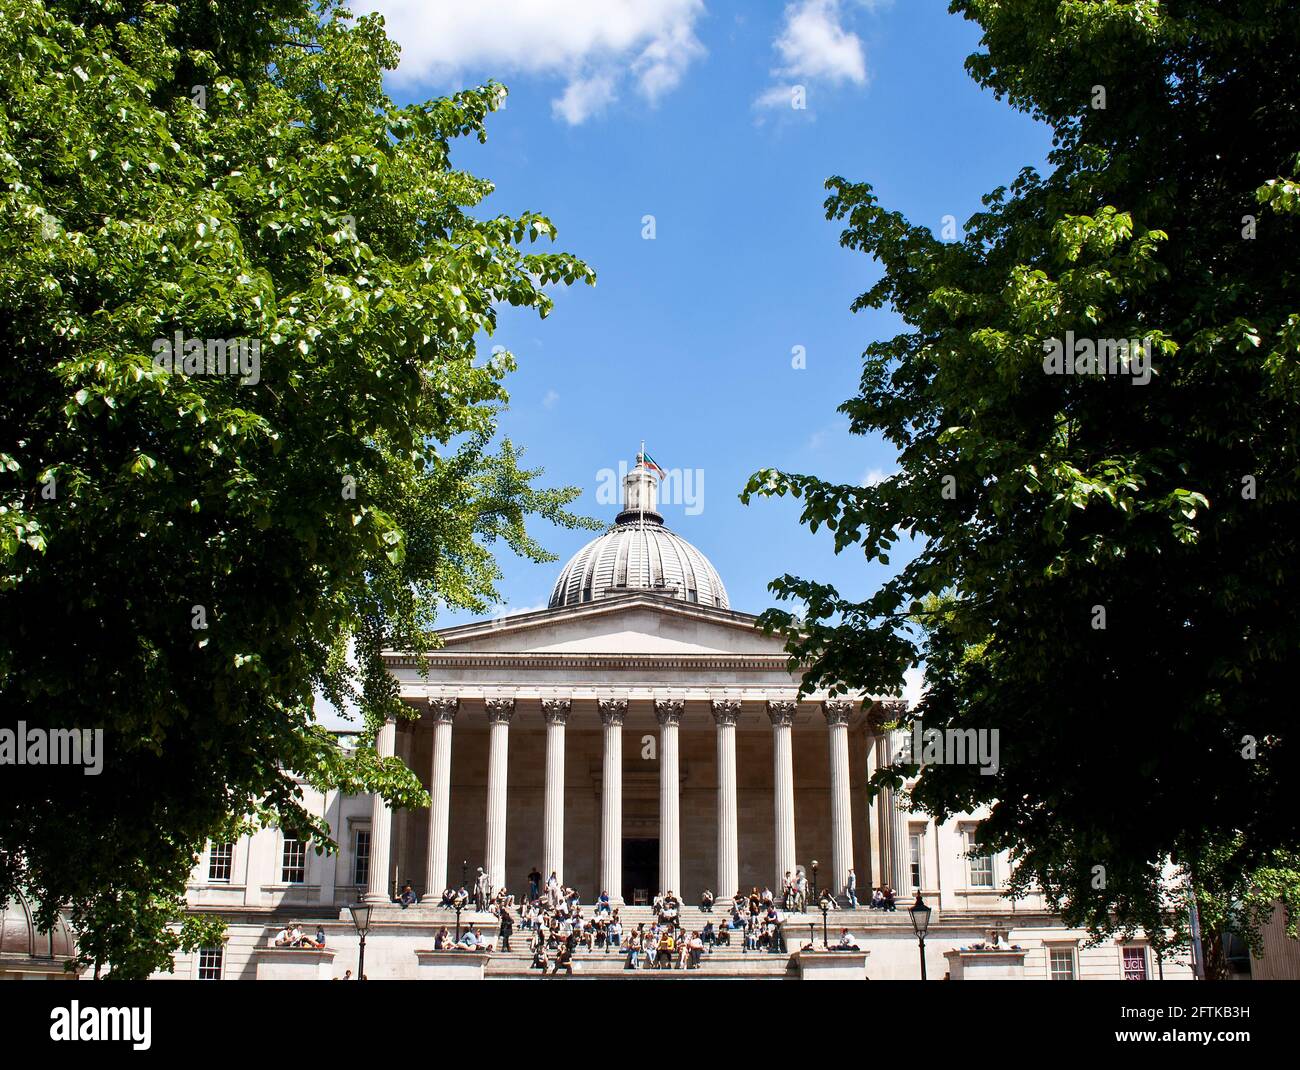 El edificio principal del University College London, una de las mejores universidades de investigación del mundo, entre dos árboles Foto de stock